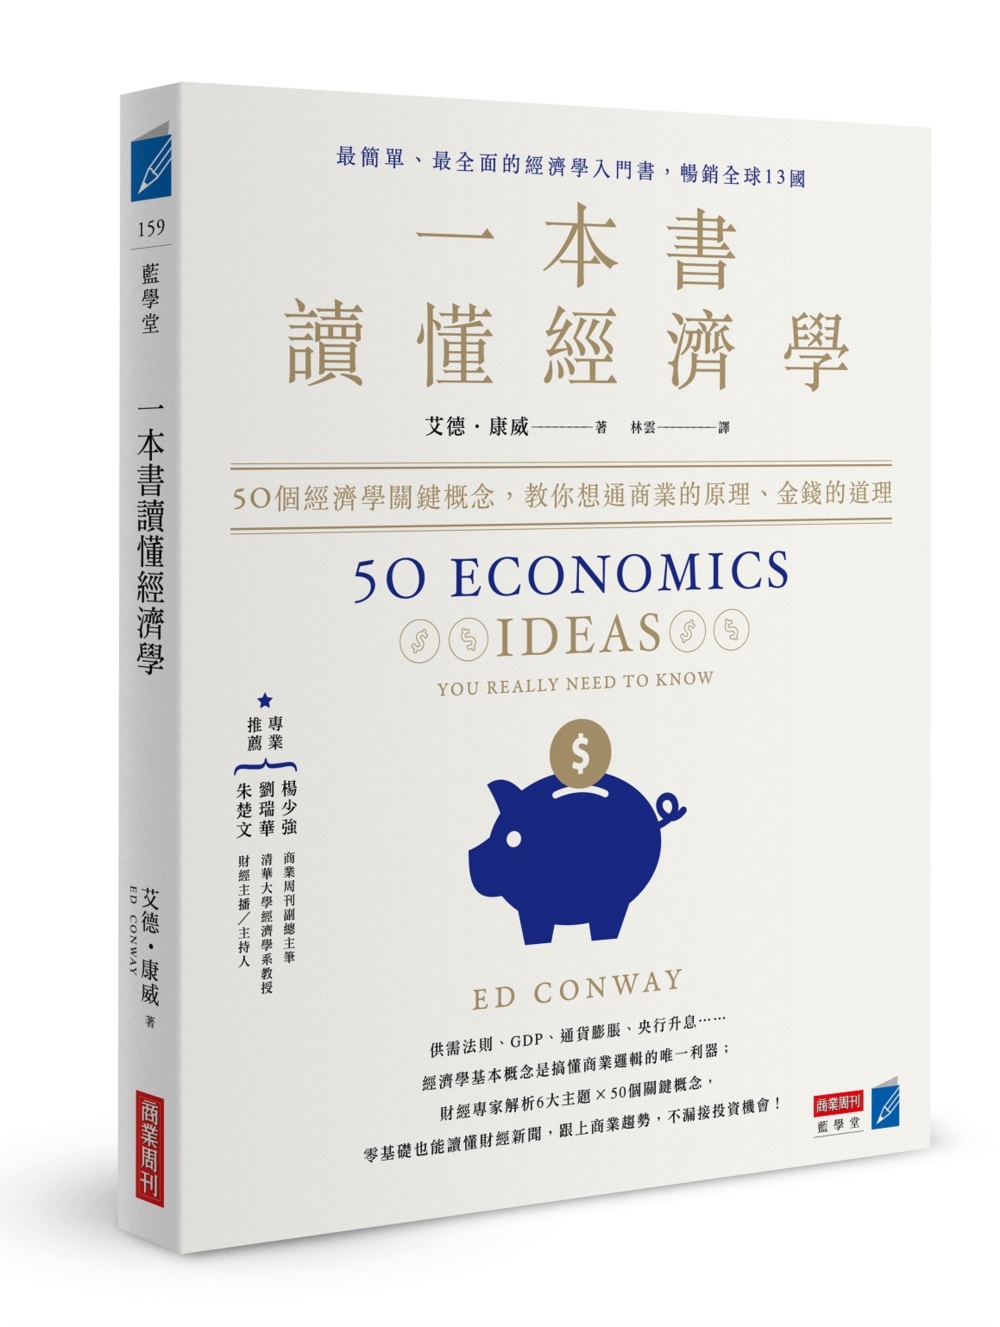 一本書讀懂經濟學：50個經濟學關鍵概念，教你想通商業的原理、金錢的道理